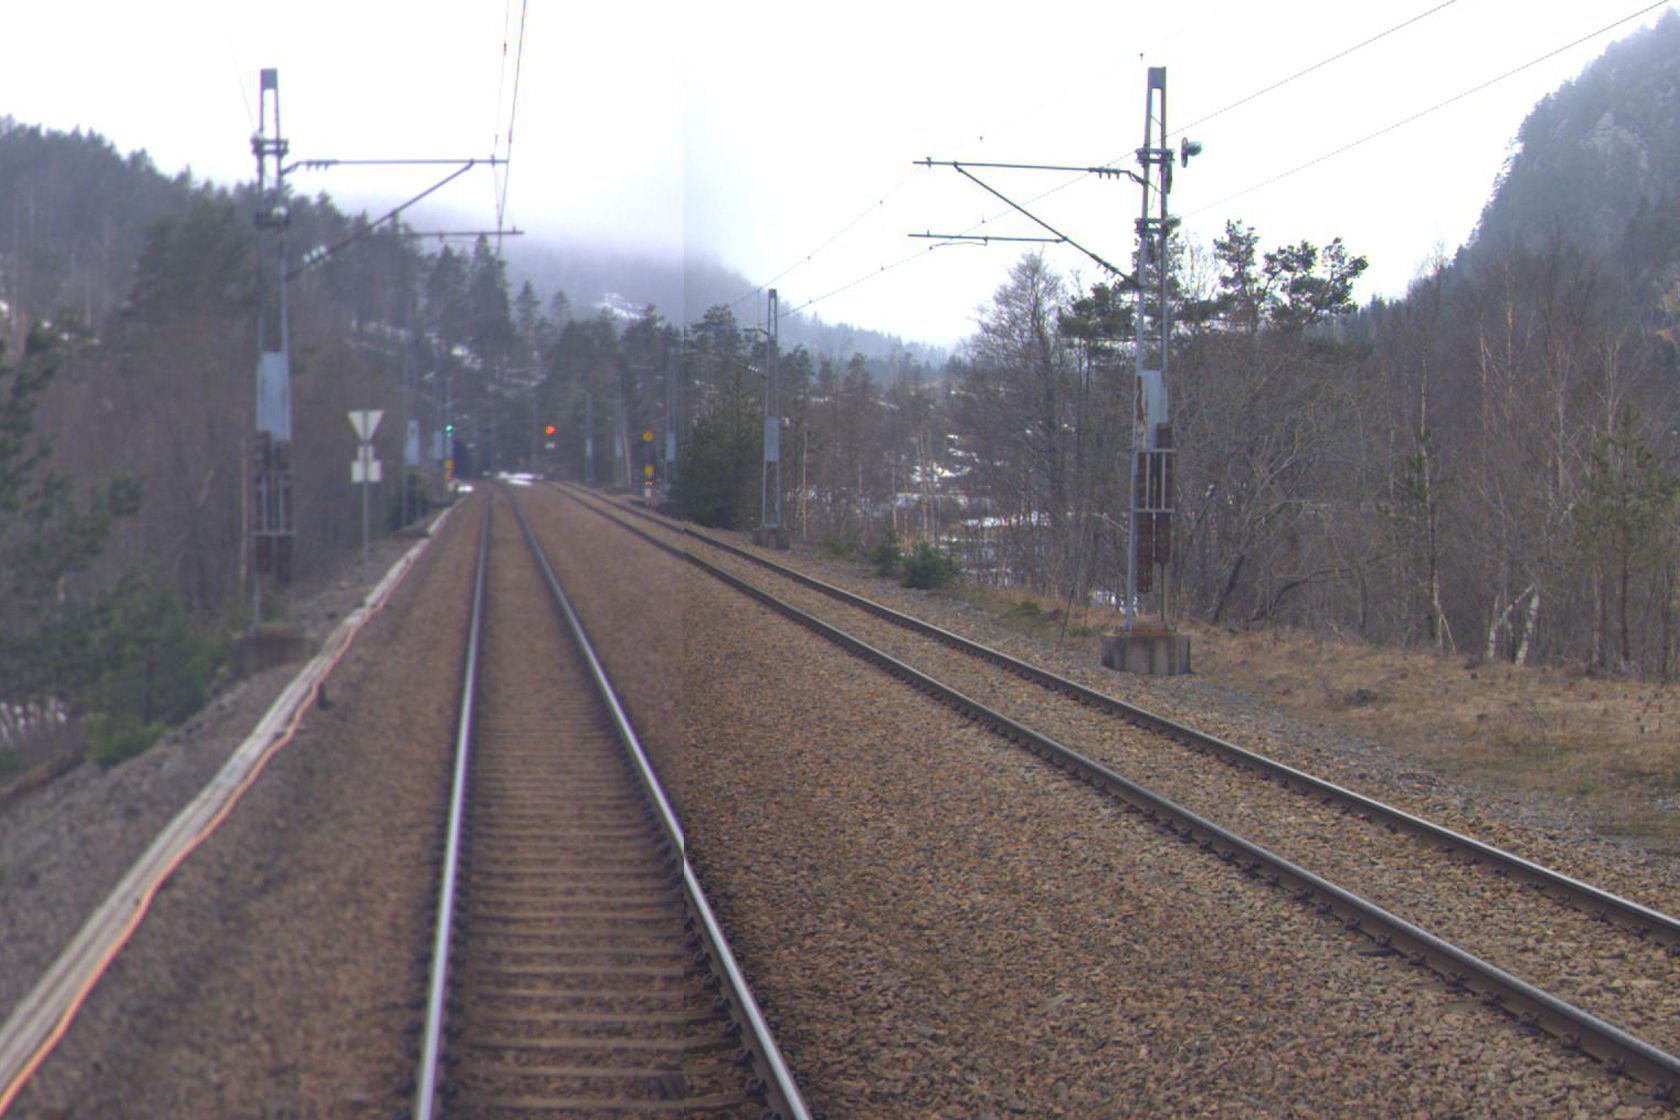 Tracks at Bjørkevoll station